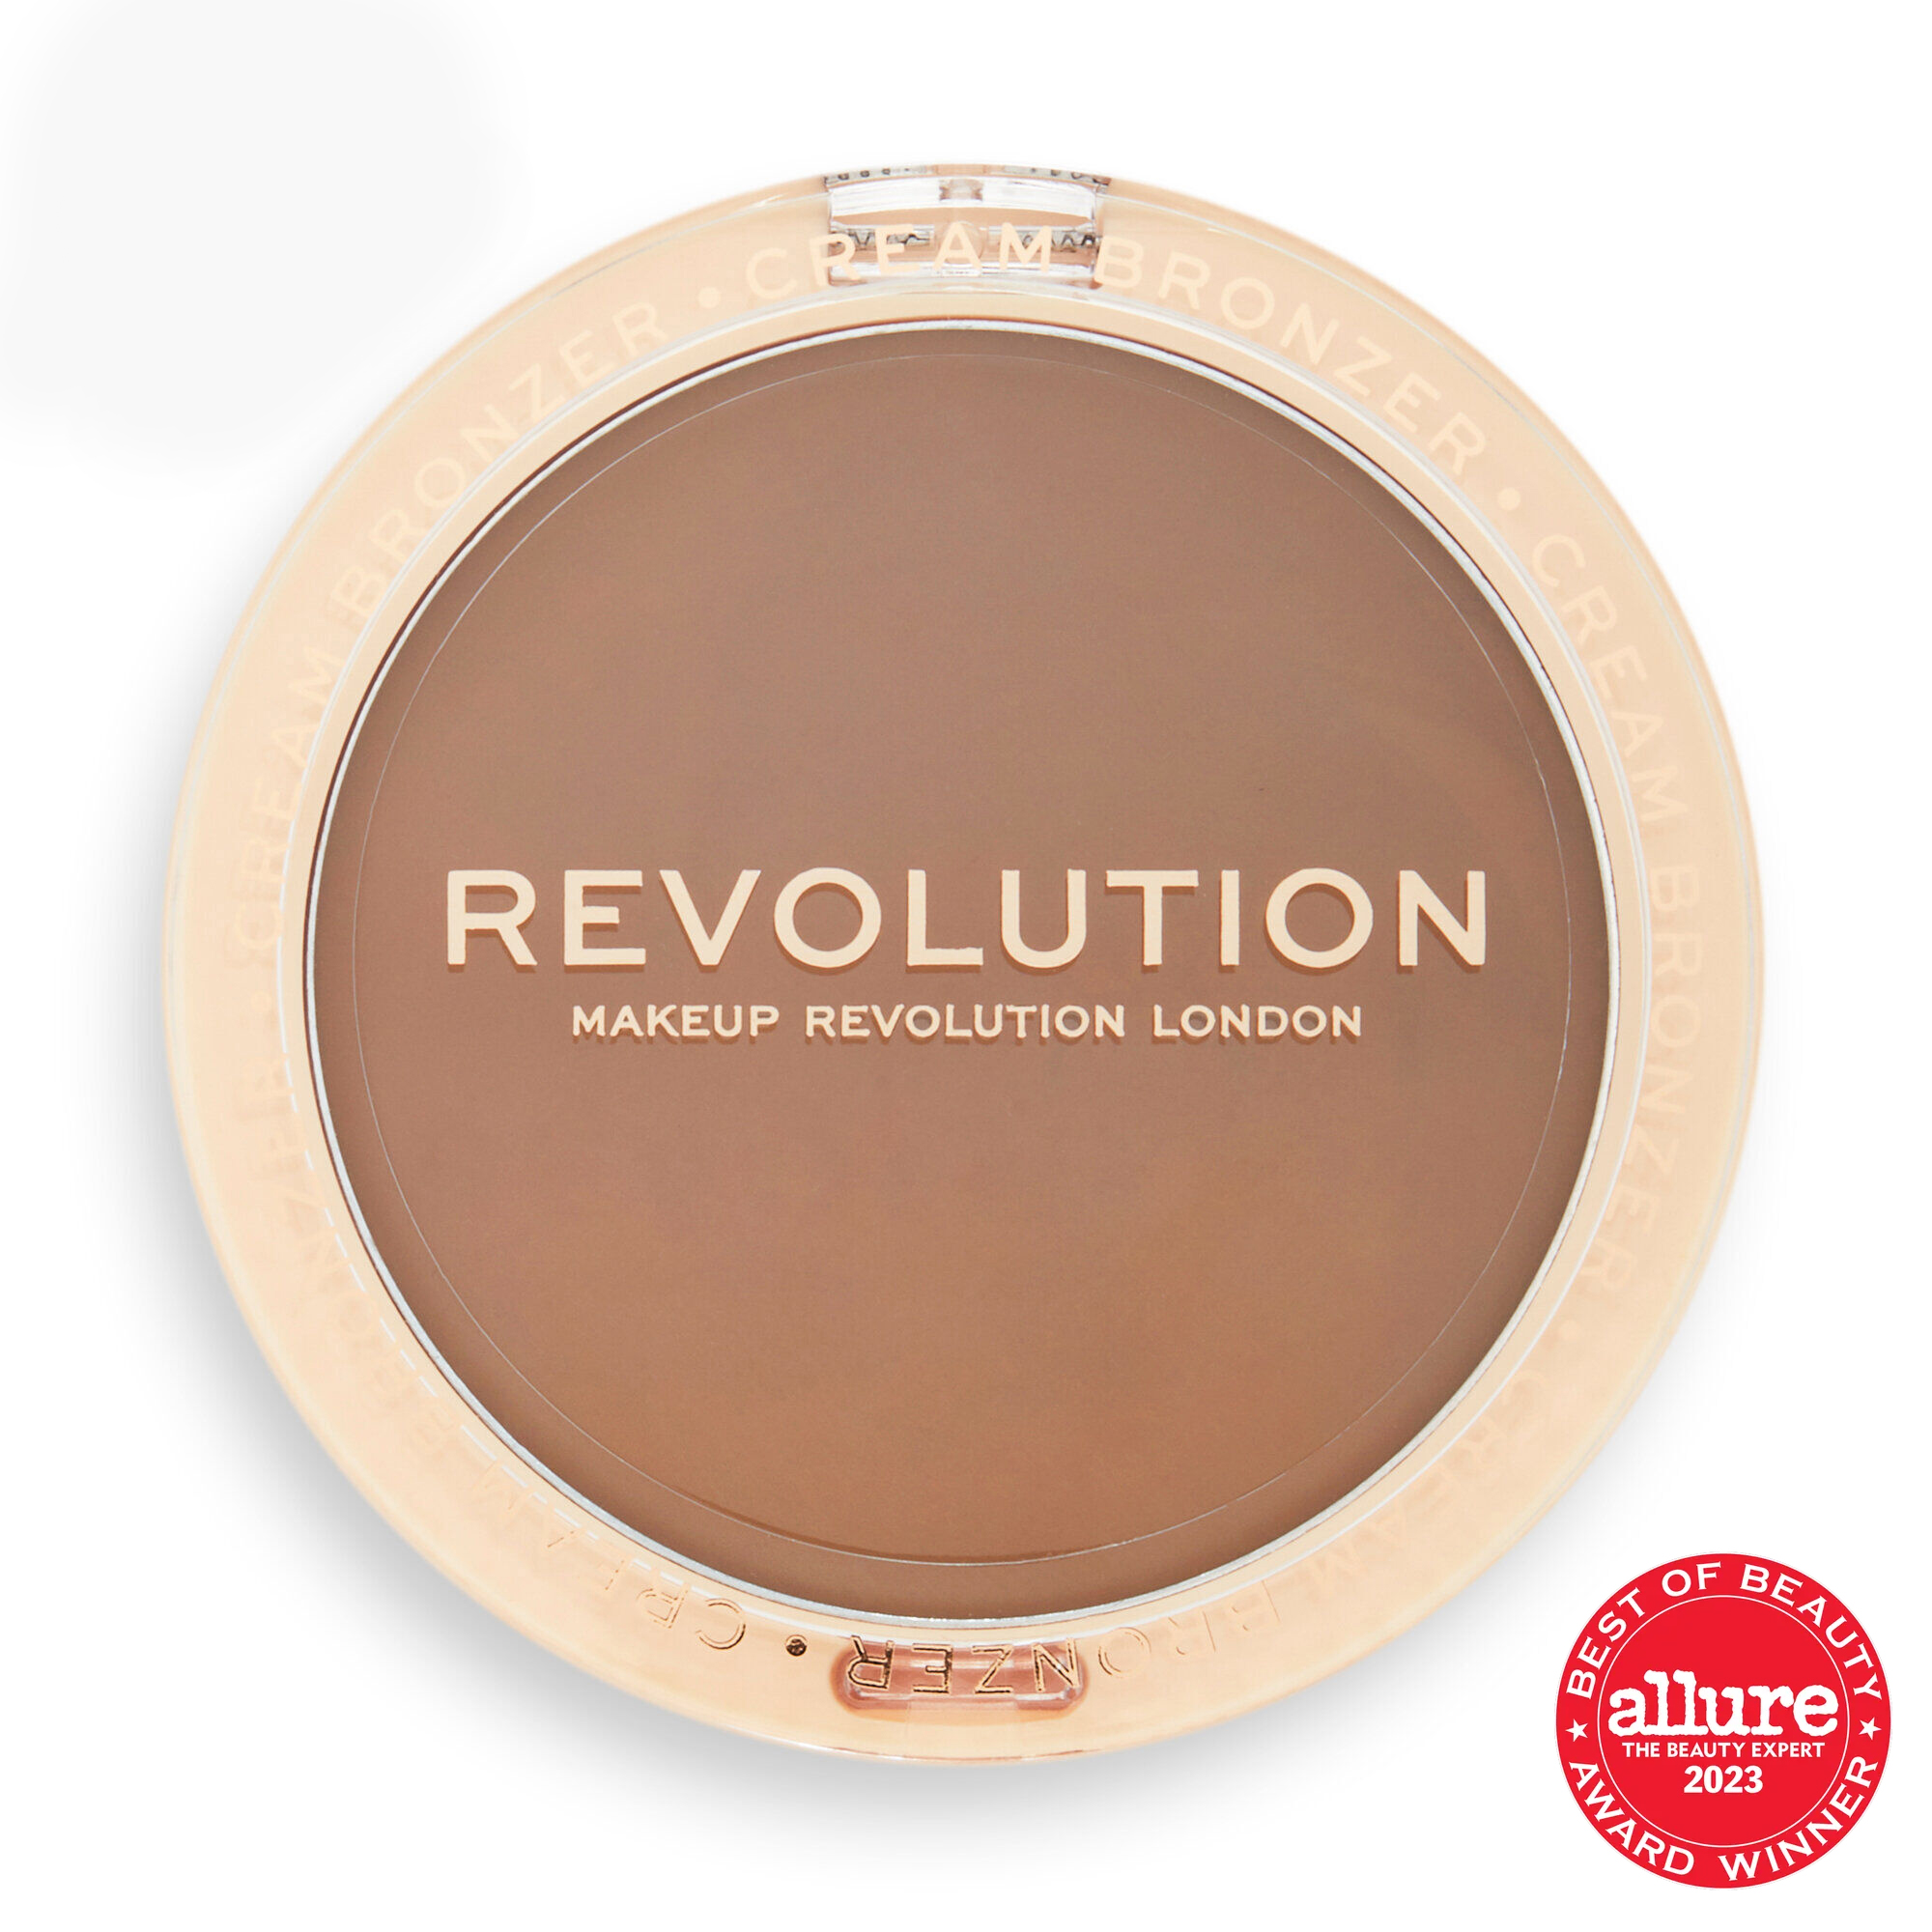 Makeup Revolution Ultra Cream Bronzer Light